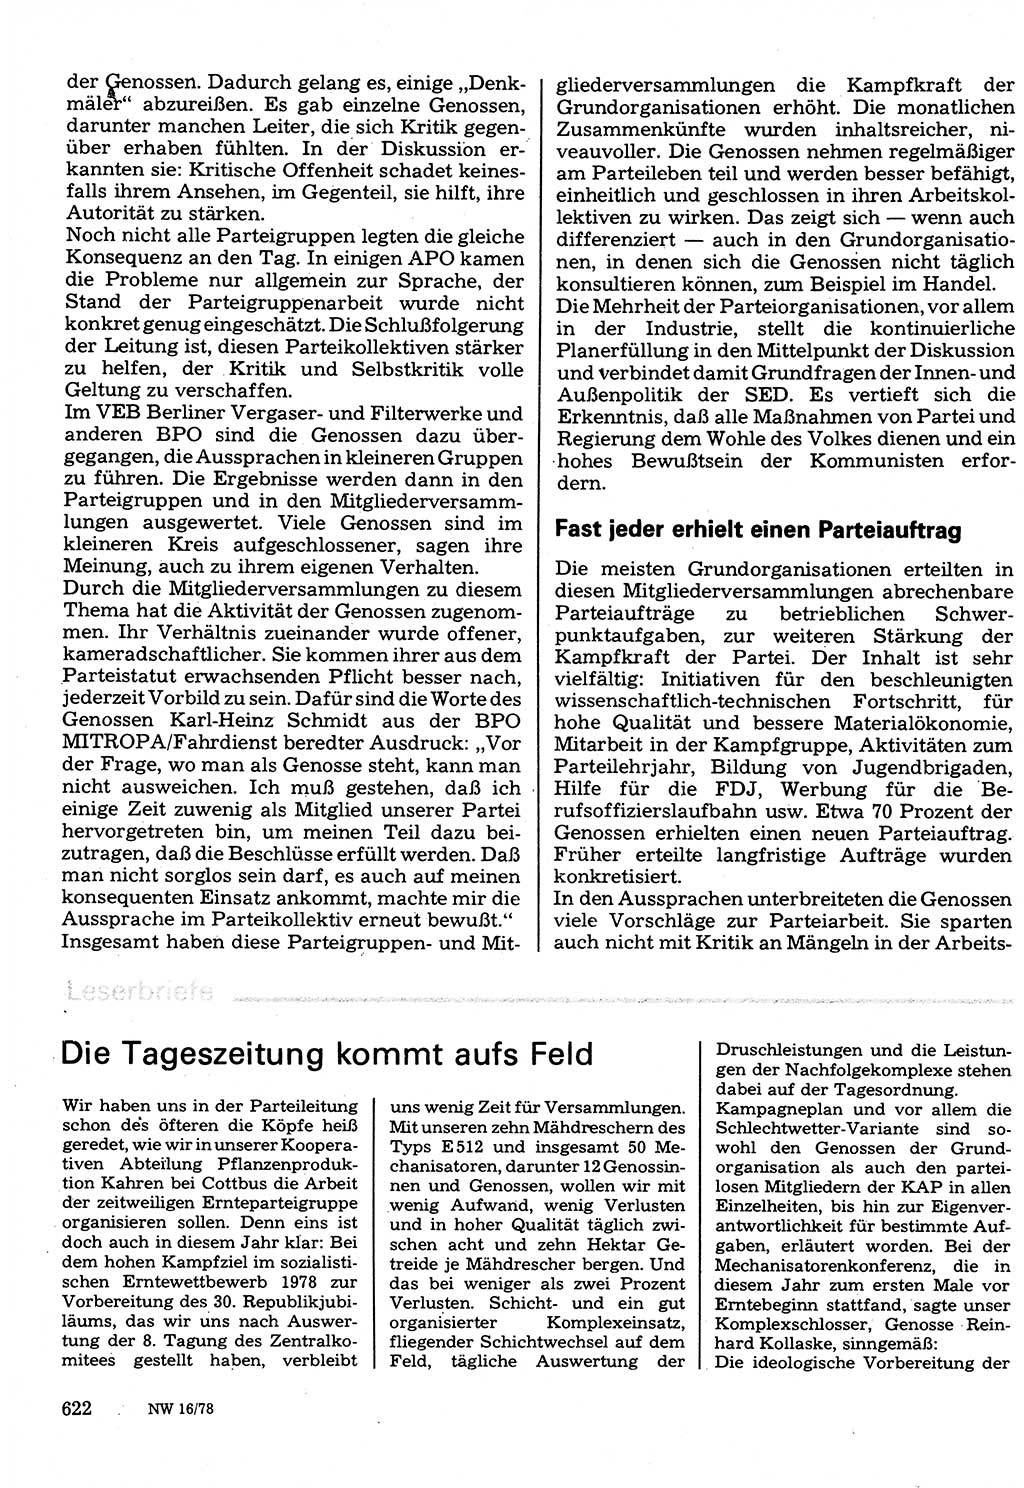 Neuer Weg (NW), Organ des Zentralkomitees (ZK) der SED (Sozialistische Einheitspartei Deutschlands) für Fragen des Parteilebens, 33. Jahrgang [Deutsche Demokratische Republik (DDR)] 1978, Seite 622 (NW ZK SED DDR 1978, S. 622)